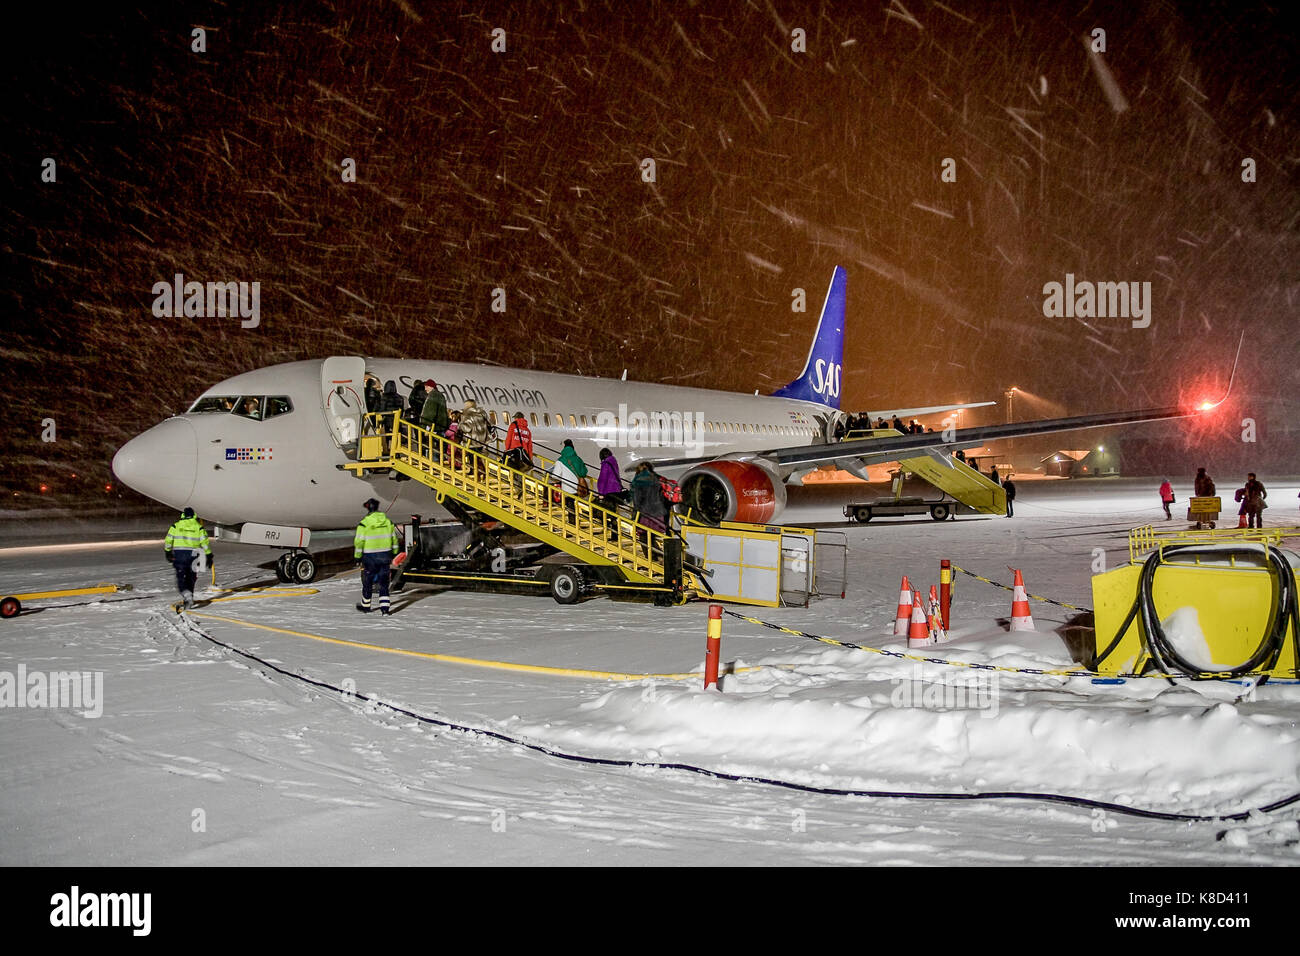 KIRUNA, Suecia - 12 de enero de 2012: SAS Scandinavian airlines, poco antes de la salida. Tormenta de nieve. Foto de stock